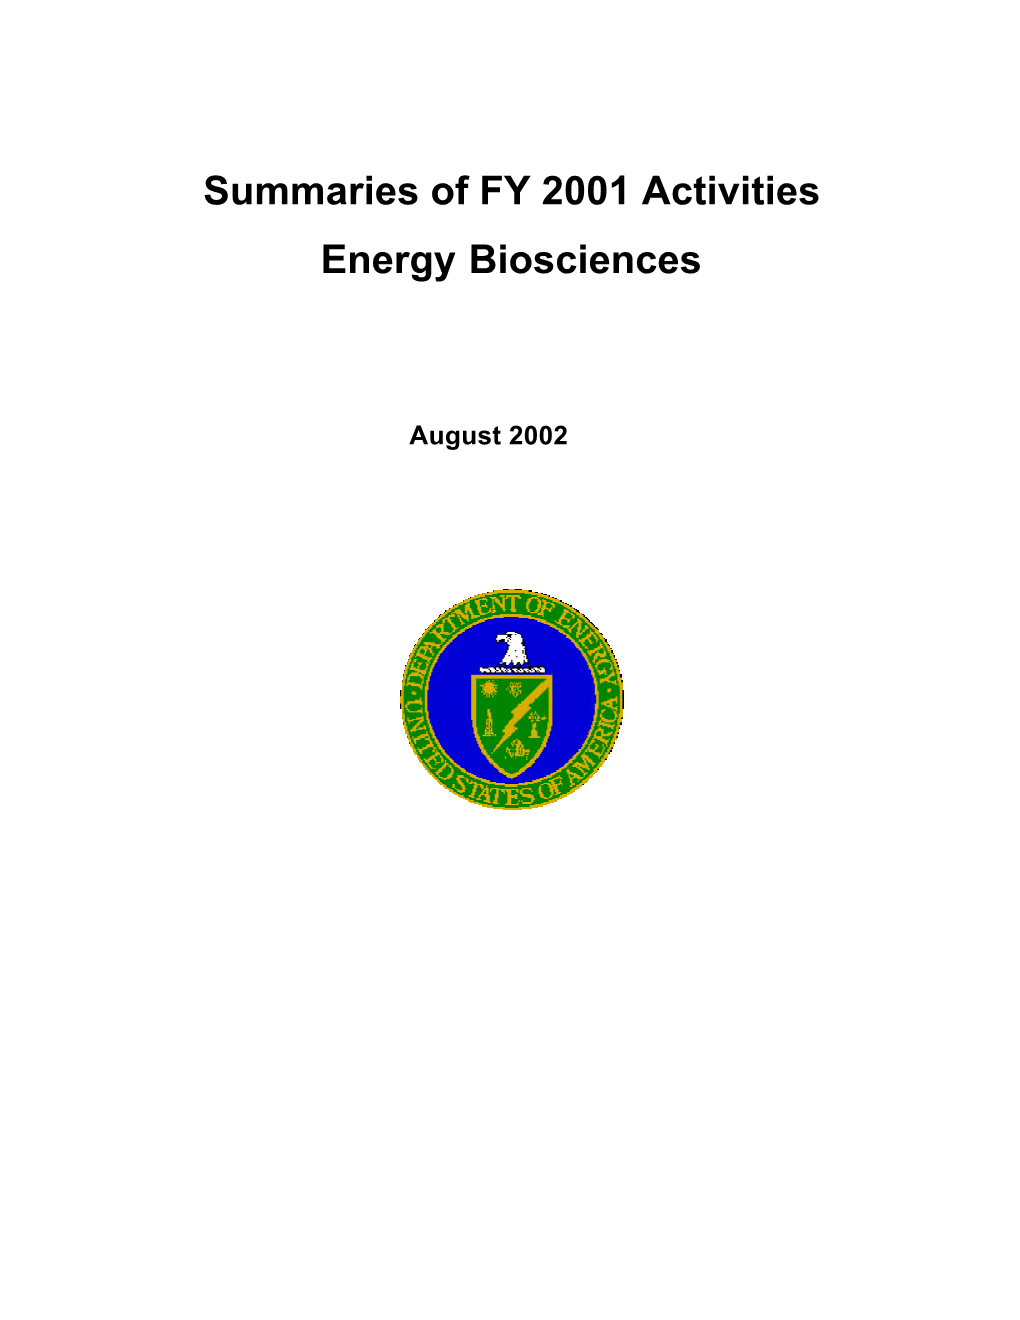 Summaries of FY 2001 Activities Energy Biosciences